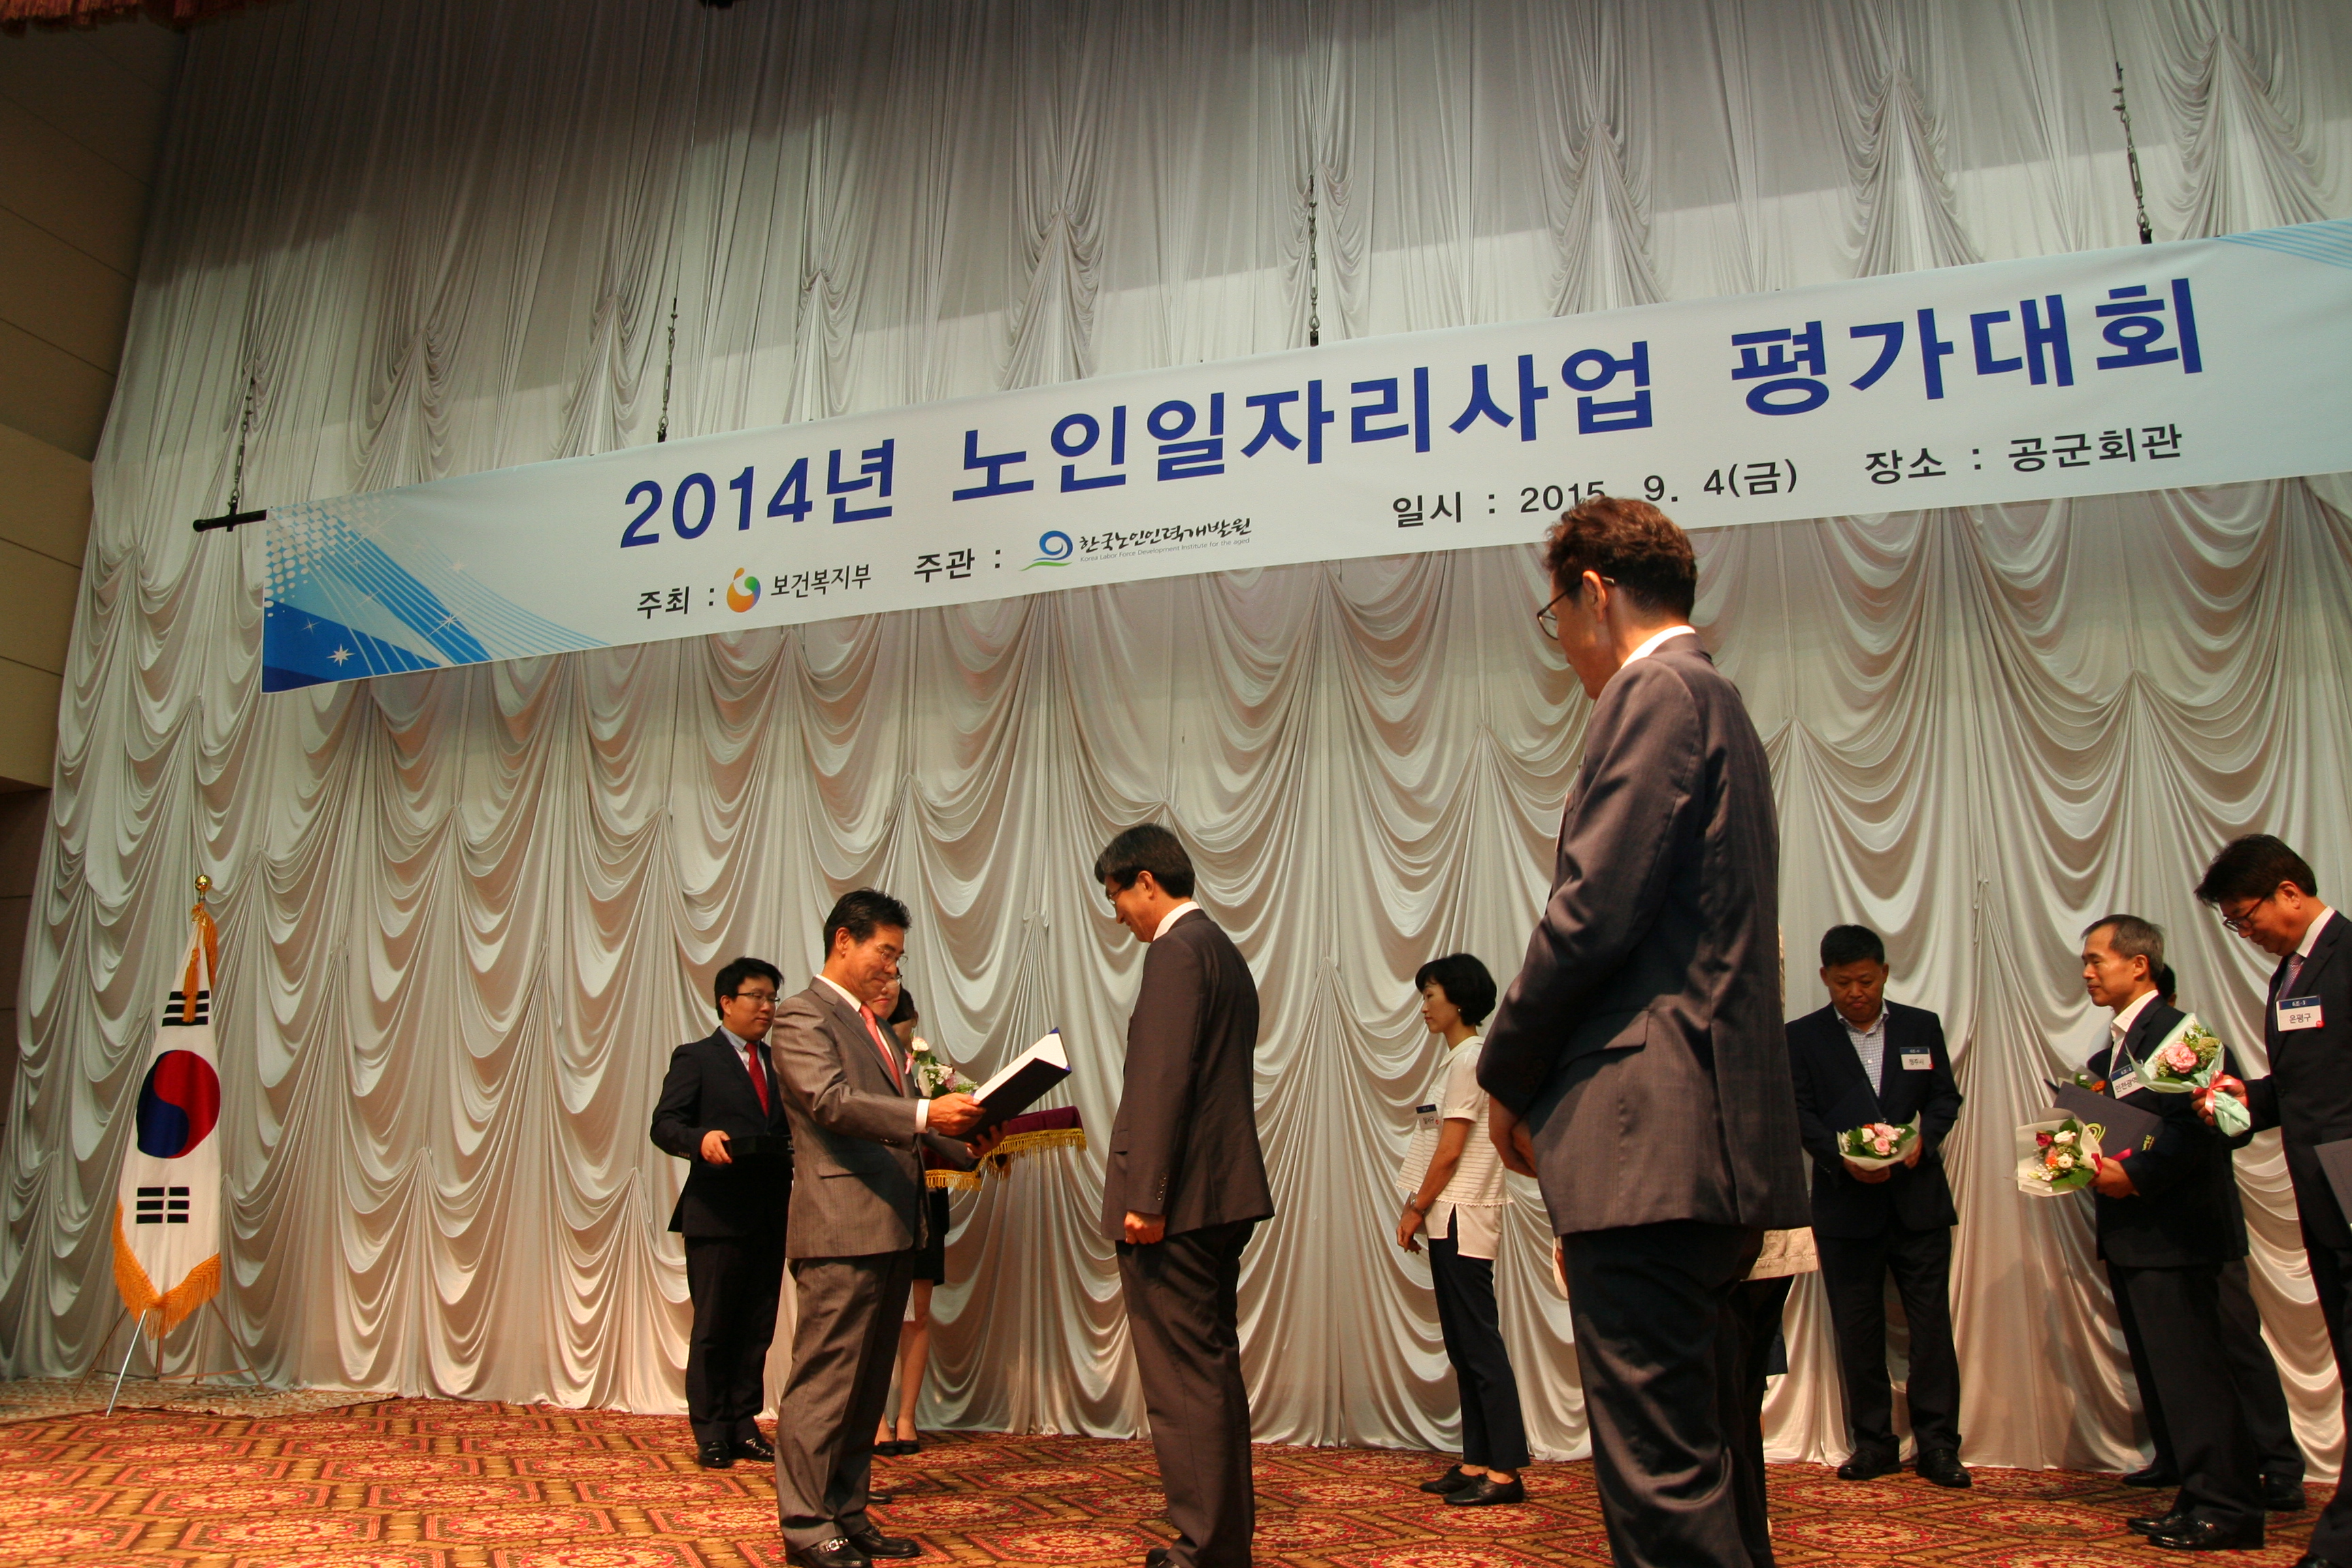 2014년 노인일자리사업 평가대회 개최